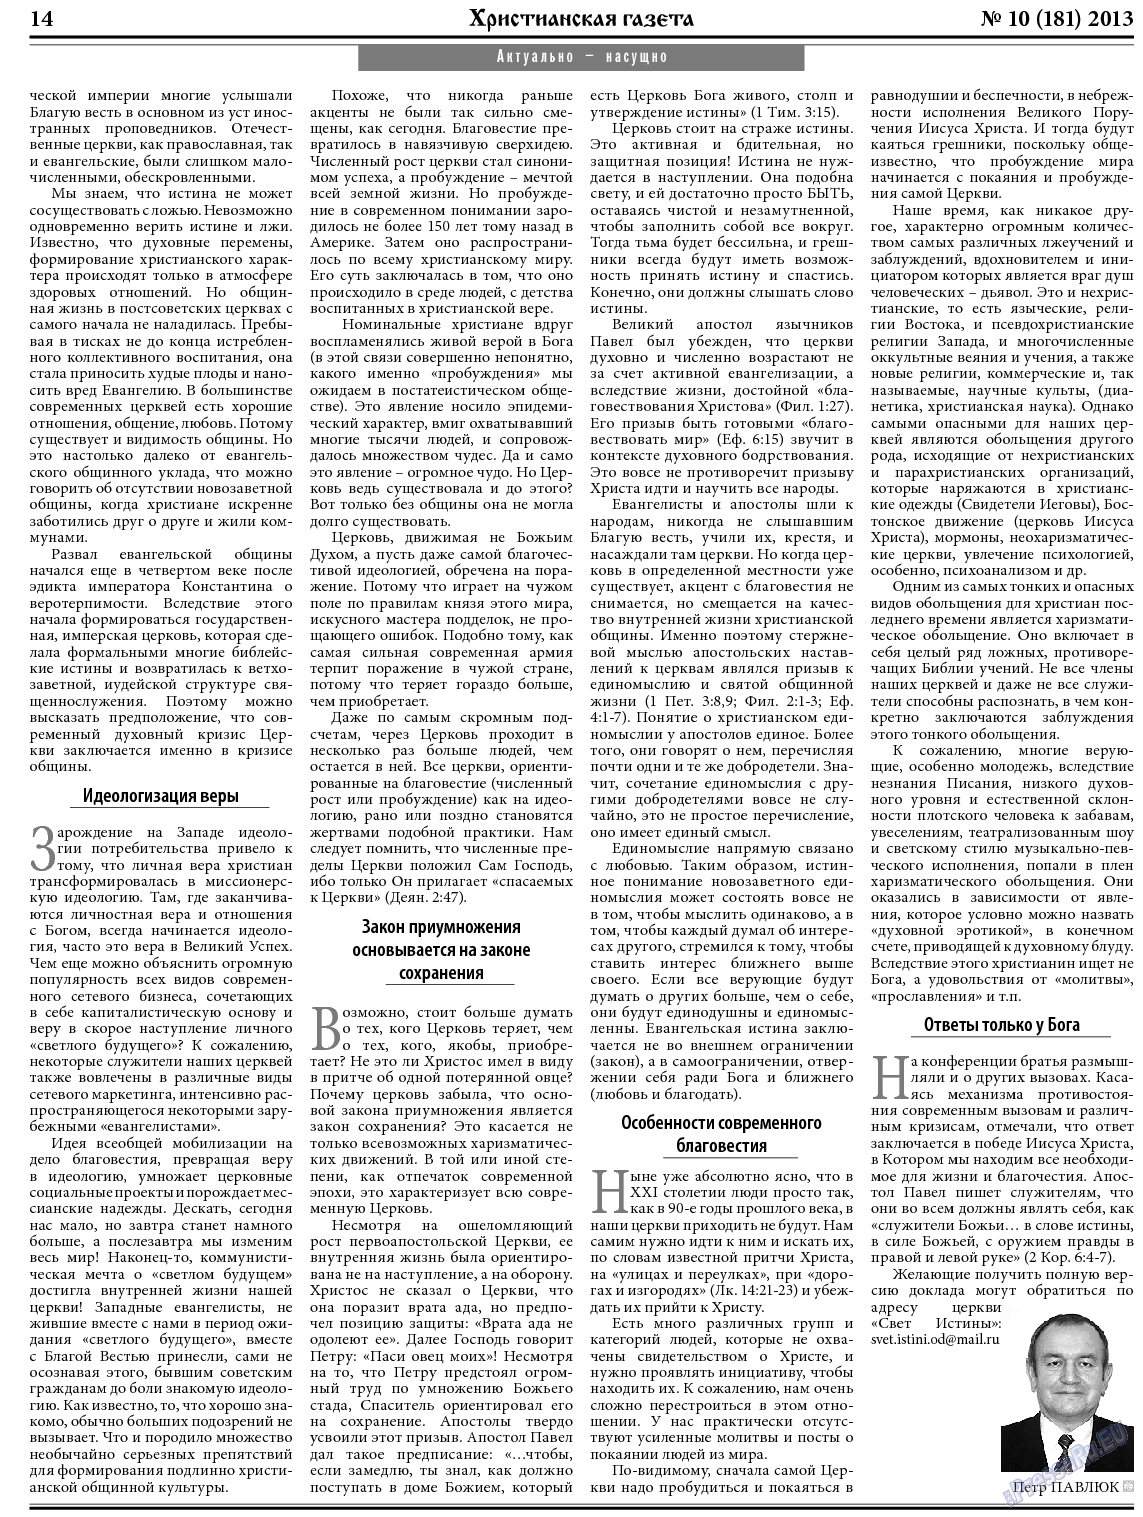 Христианская газета, газета. 2013 №10 стр.22